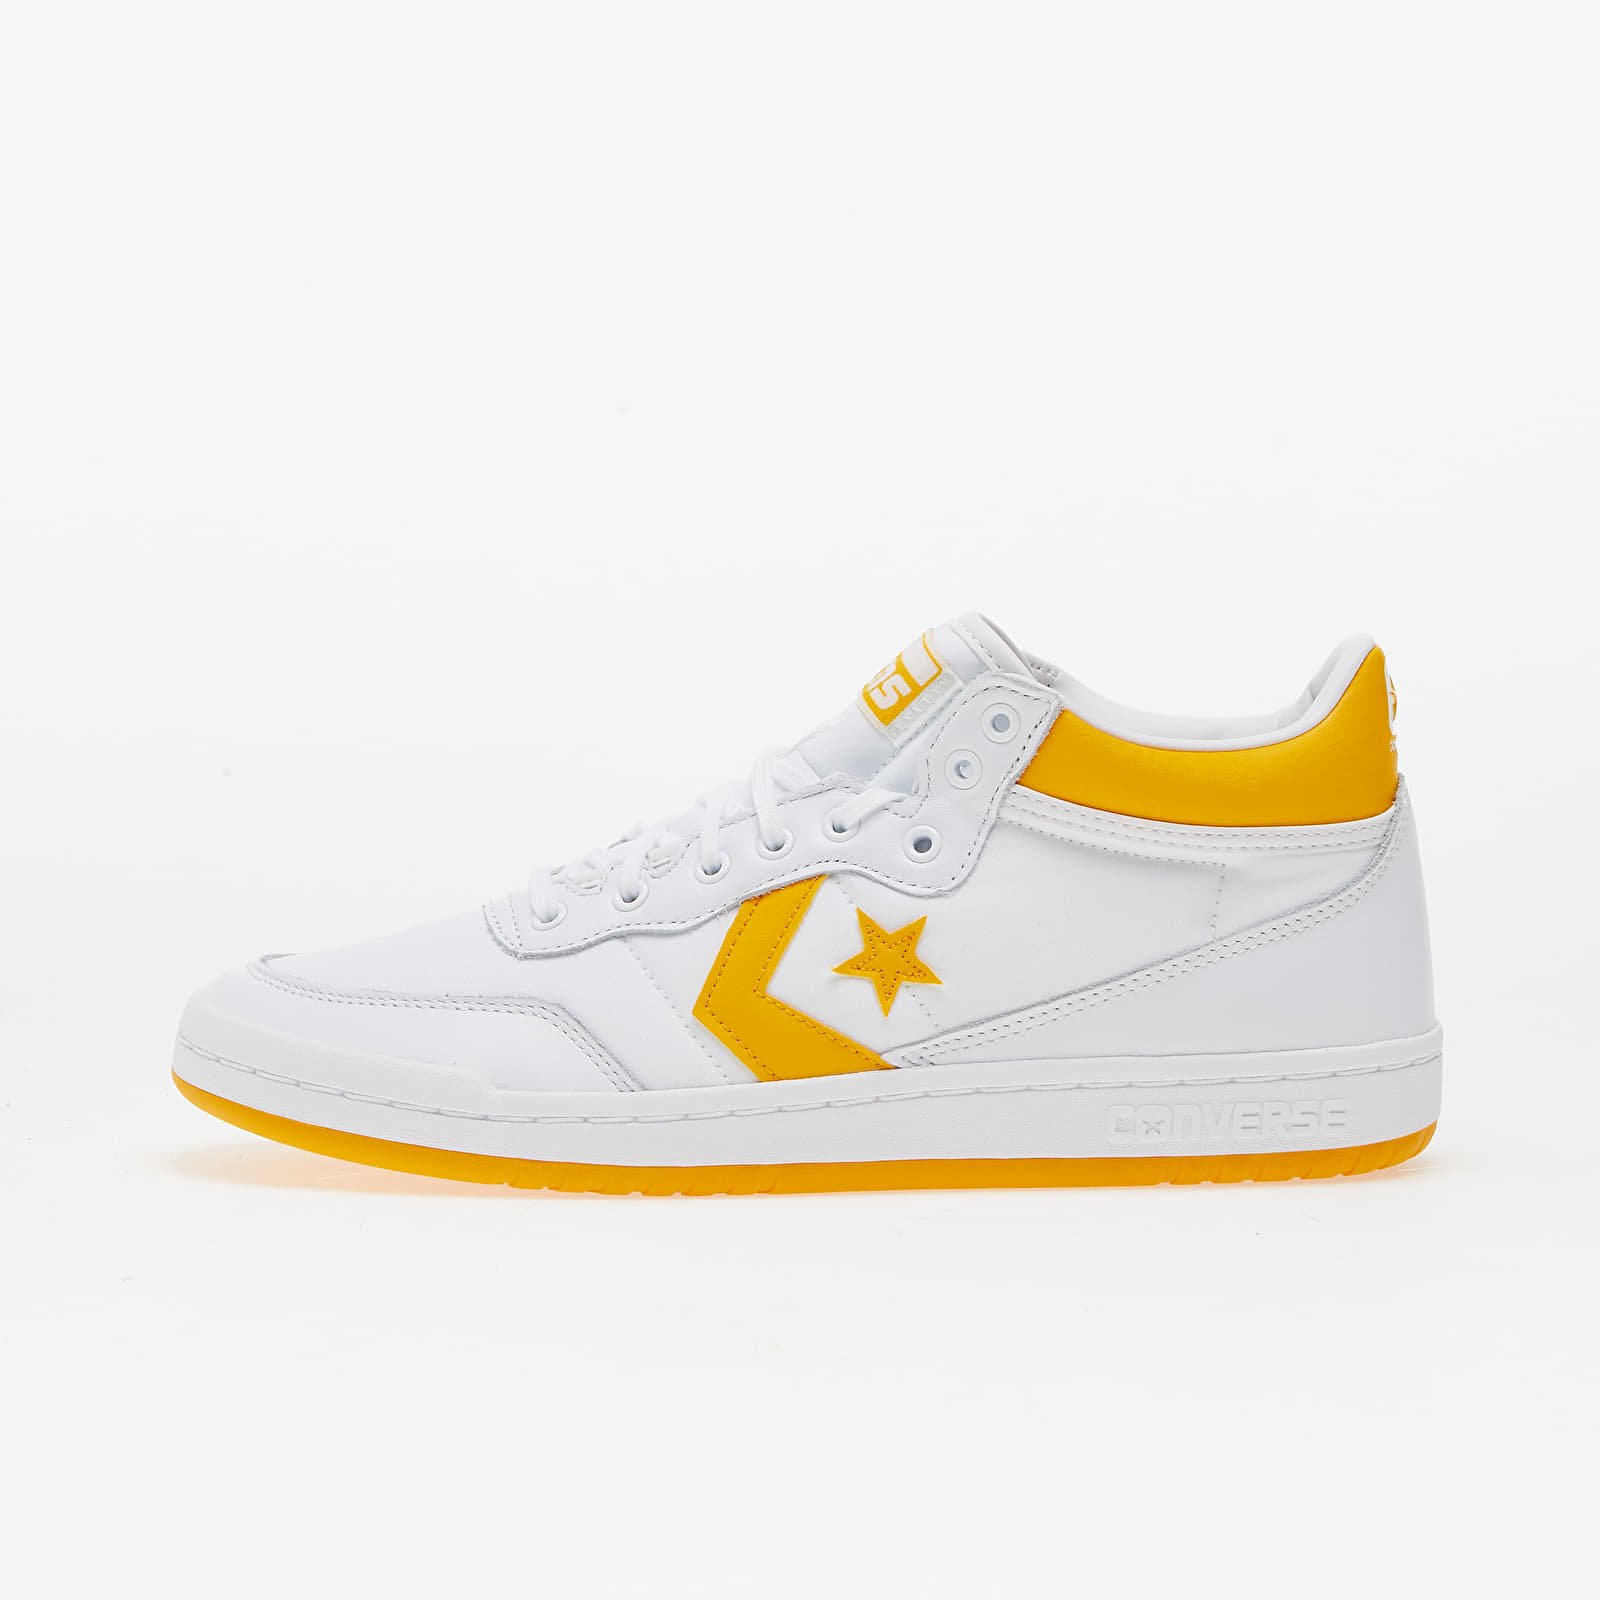 Ανδρικά παπούτσια Converse Fastbreak Pro White/ Light Yellow/ White